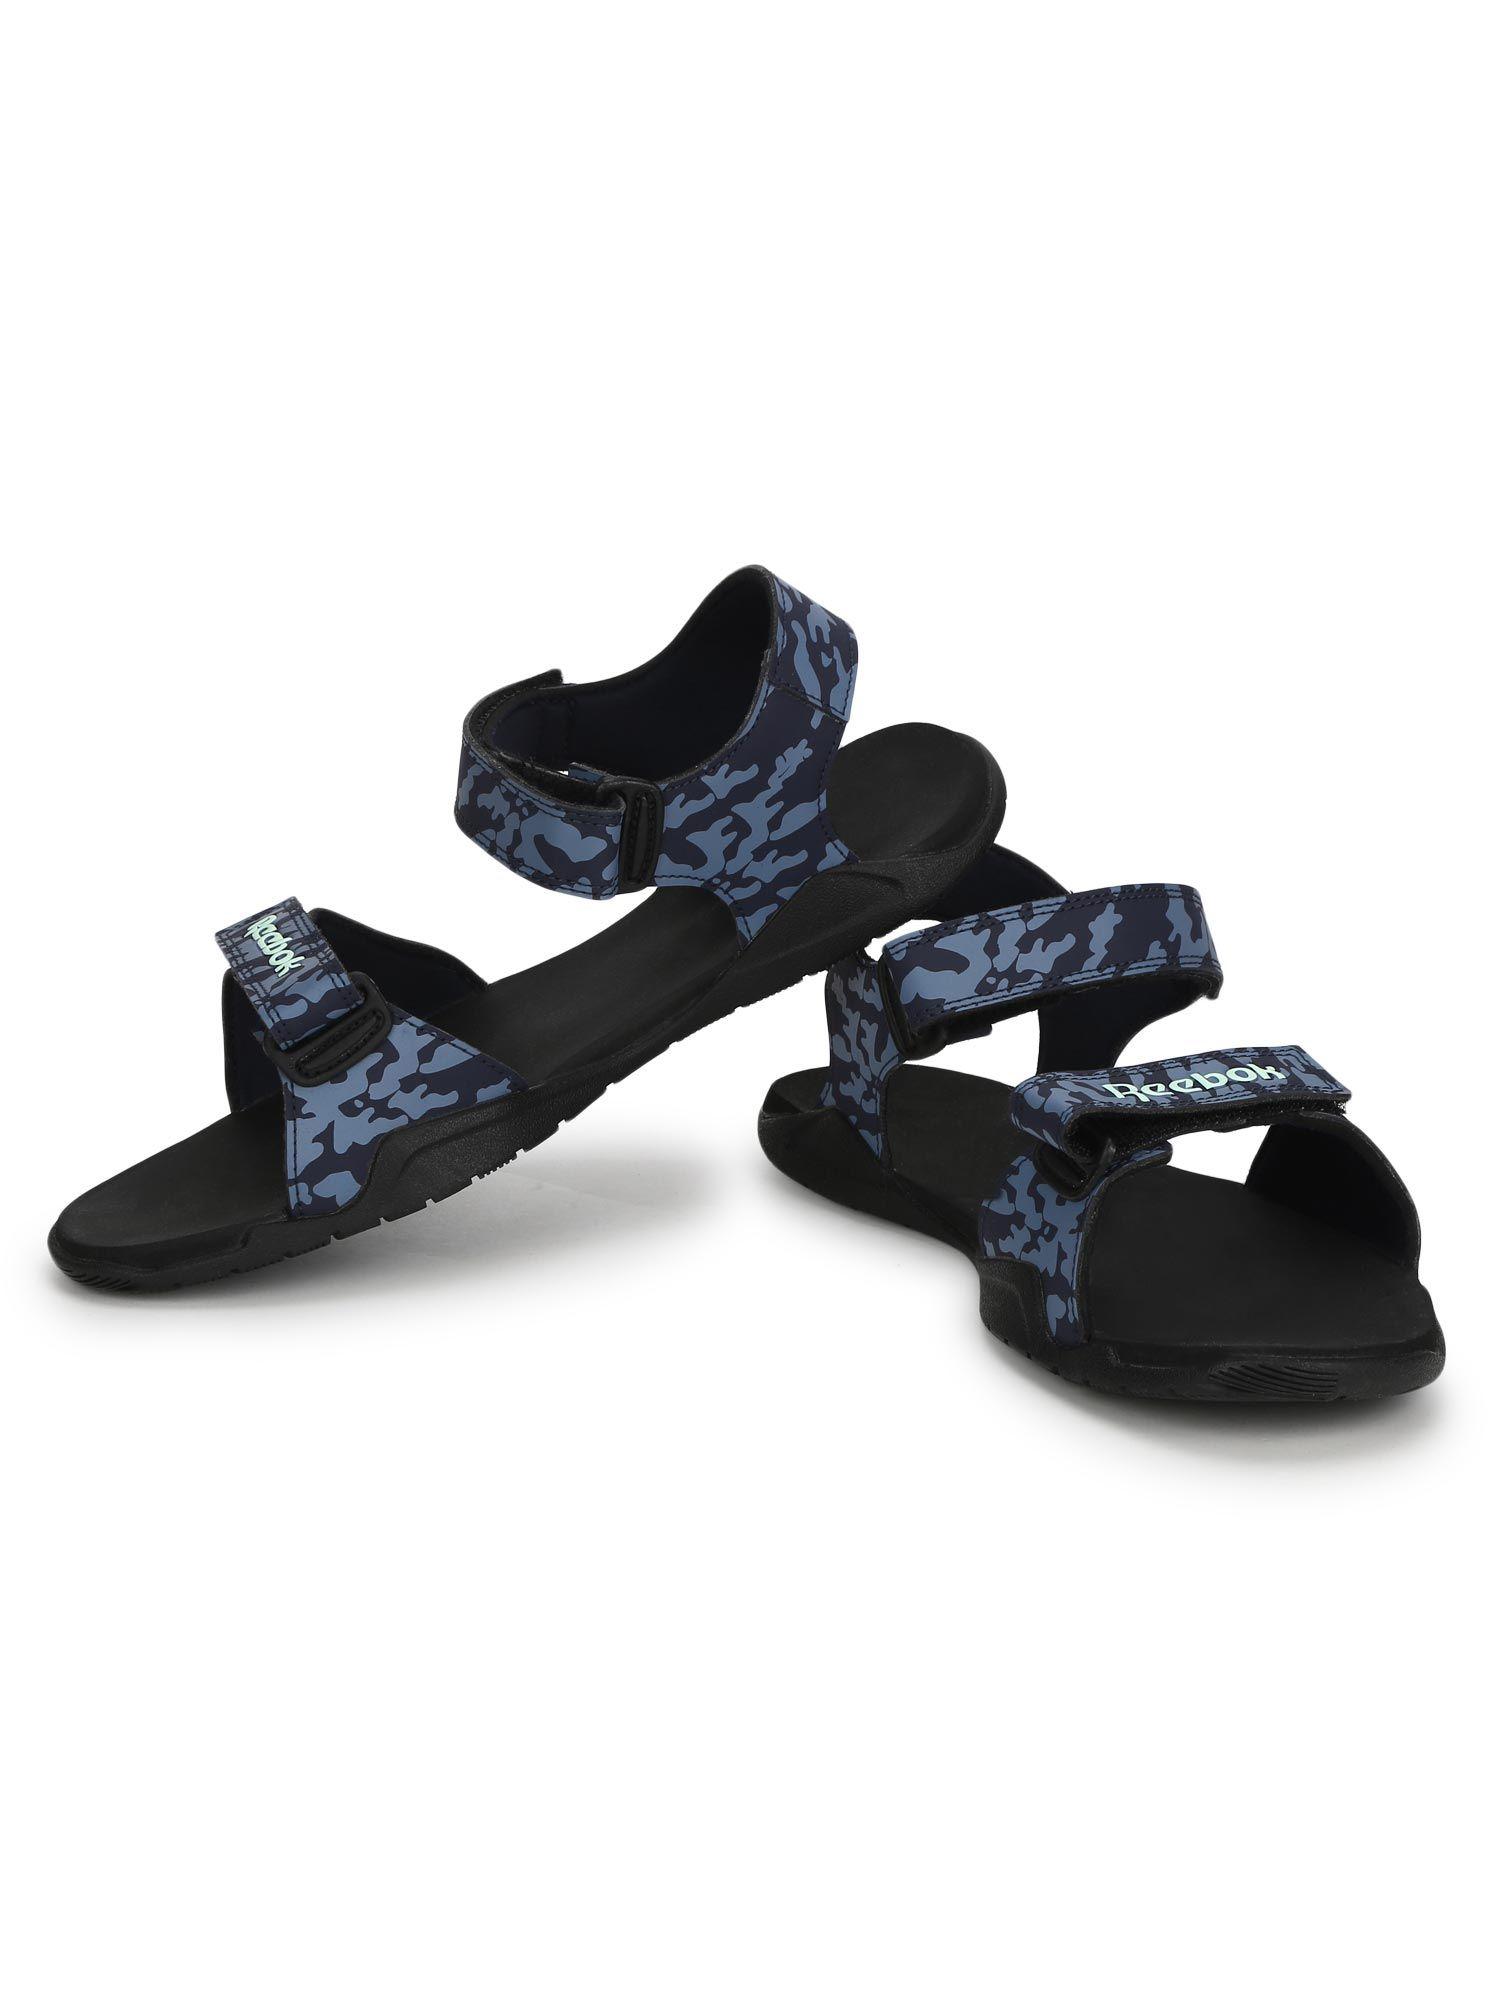 milo sandal navy blue swim sandal